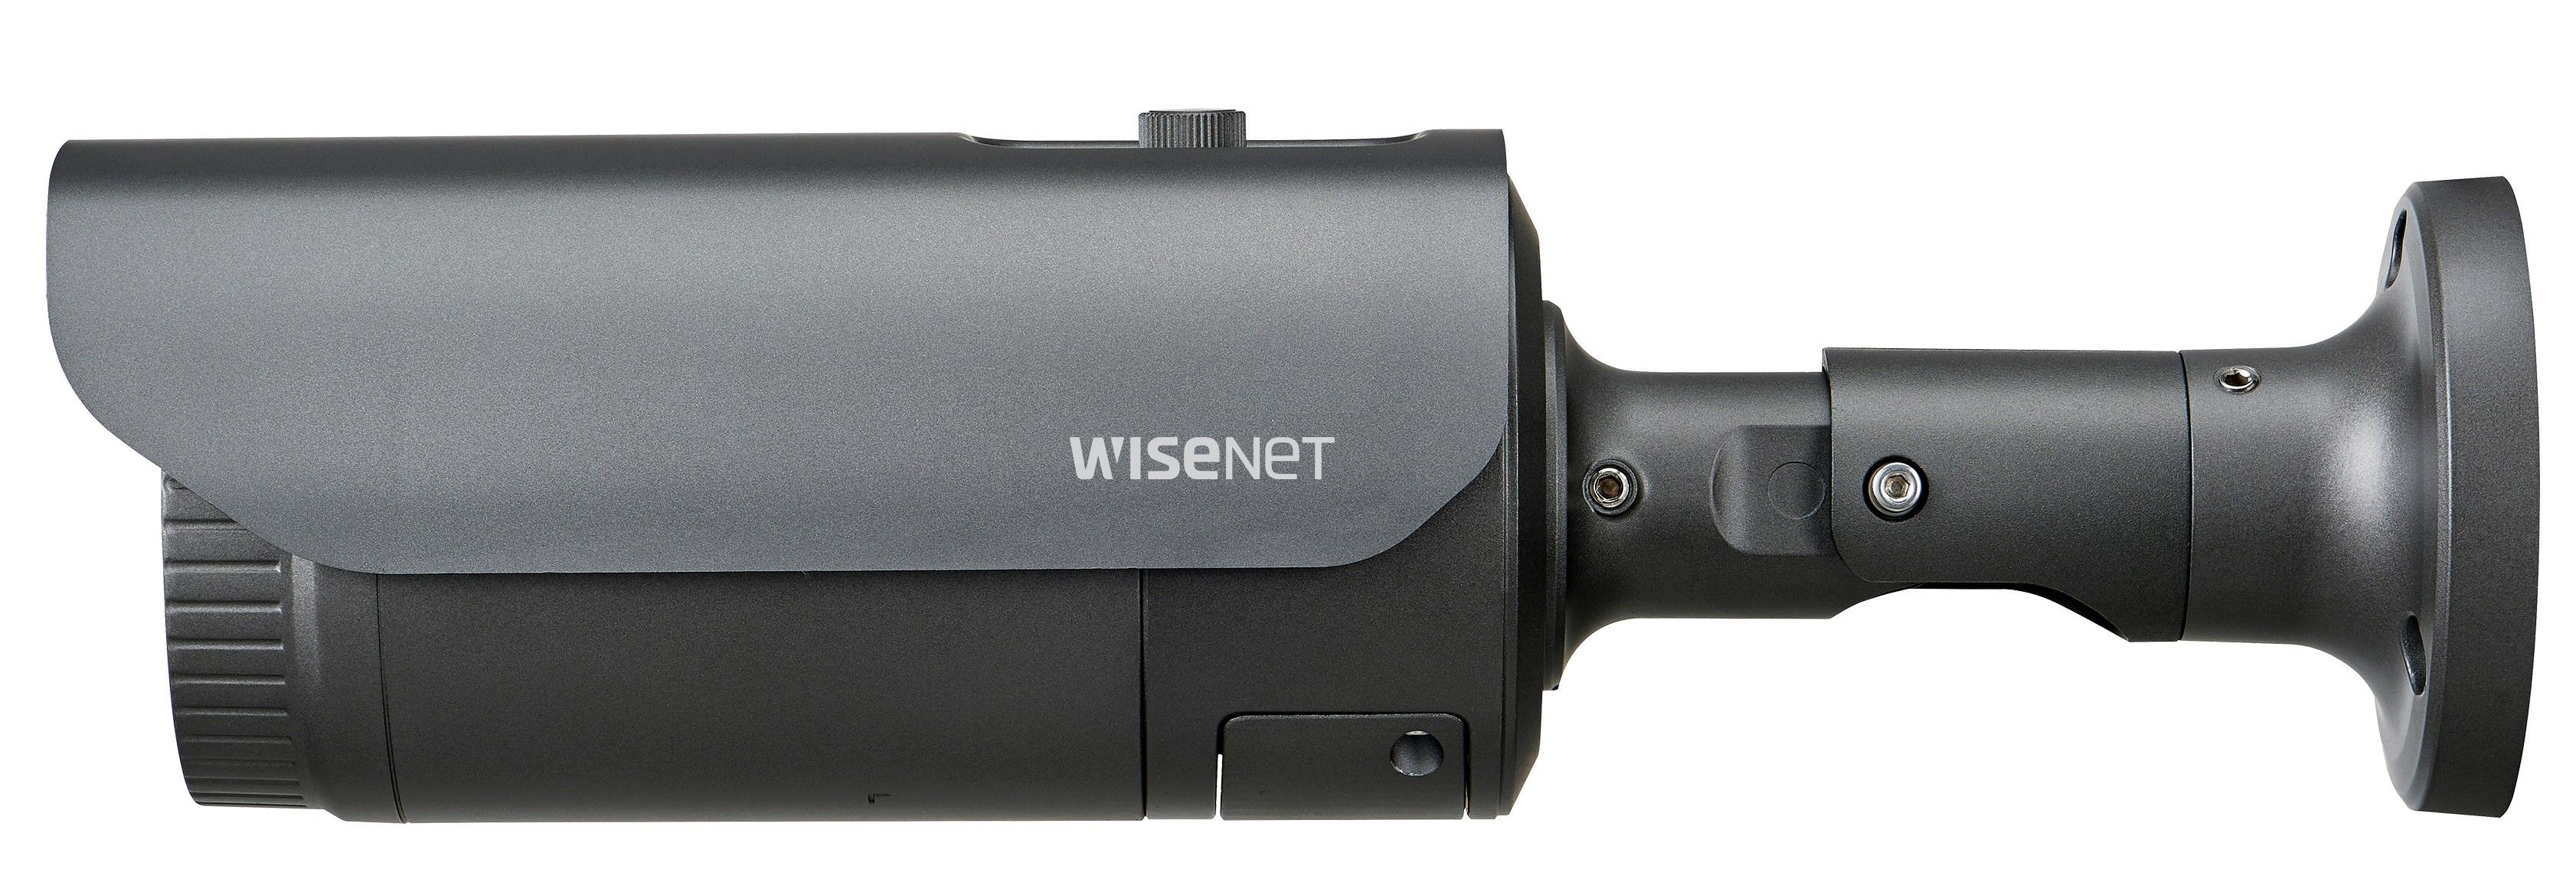 Камера видеонаблюдения Wisenet XNO-L6080R отзывы - изображения 5